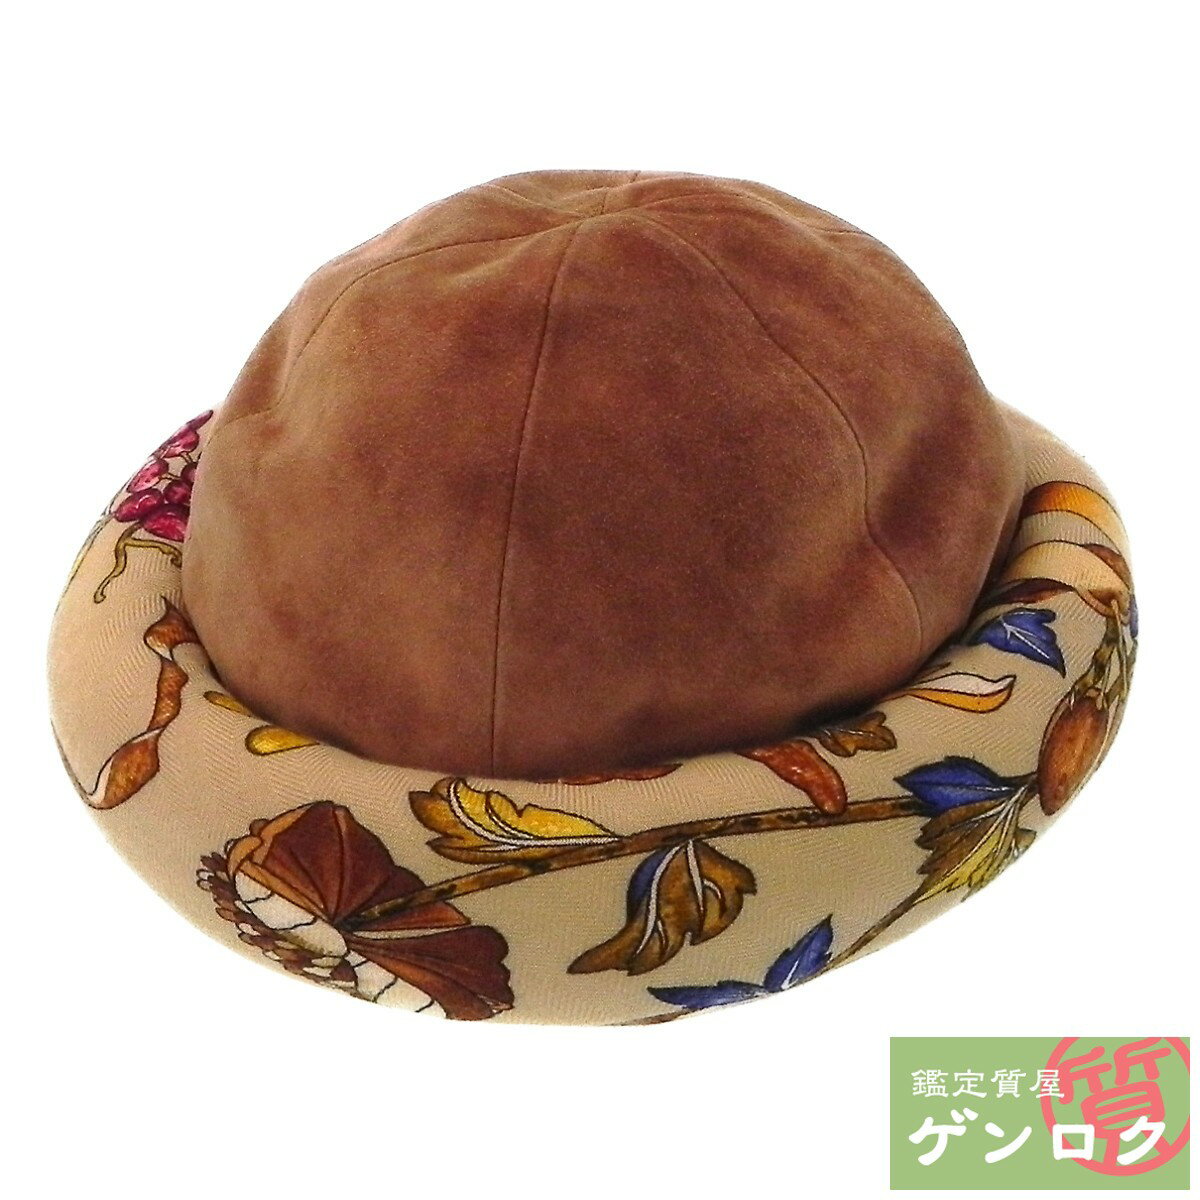 【中古】エルメス MOTSCH キャメル ブラウン 帽子 HERMES【質屋】【代引き手数料無料】